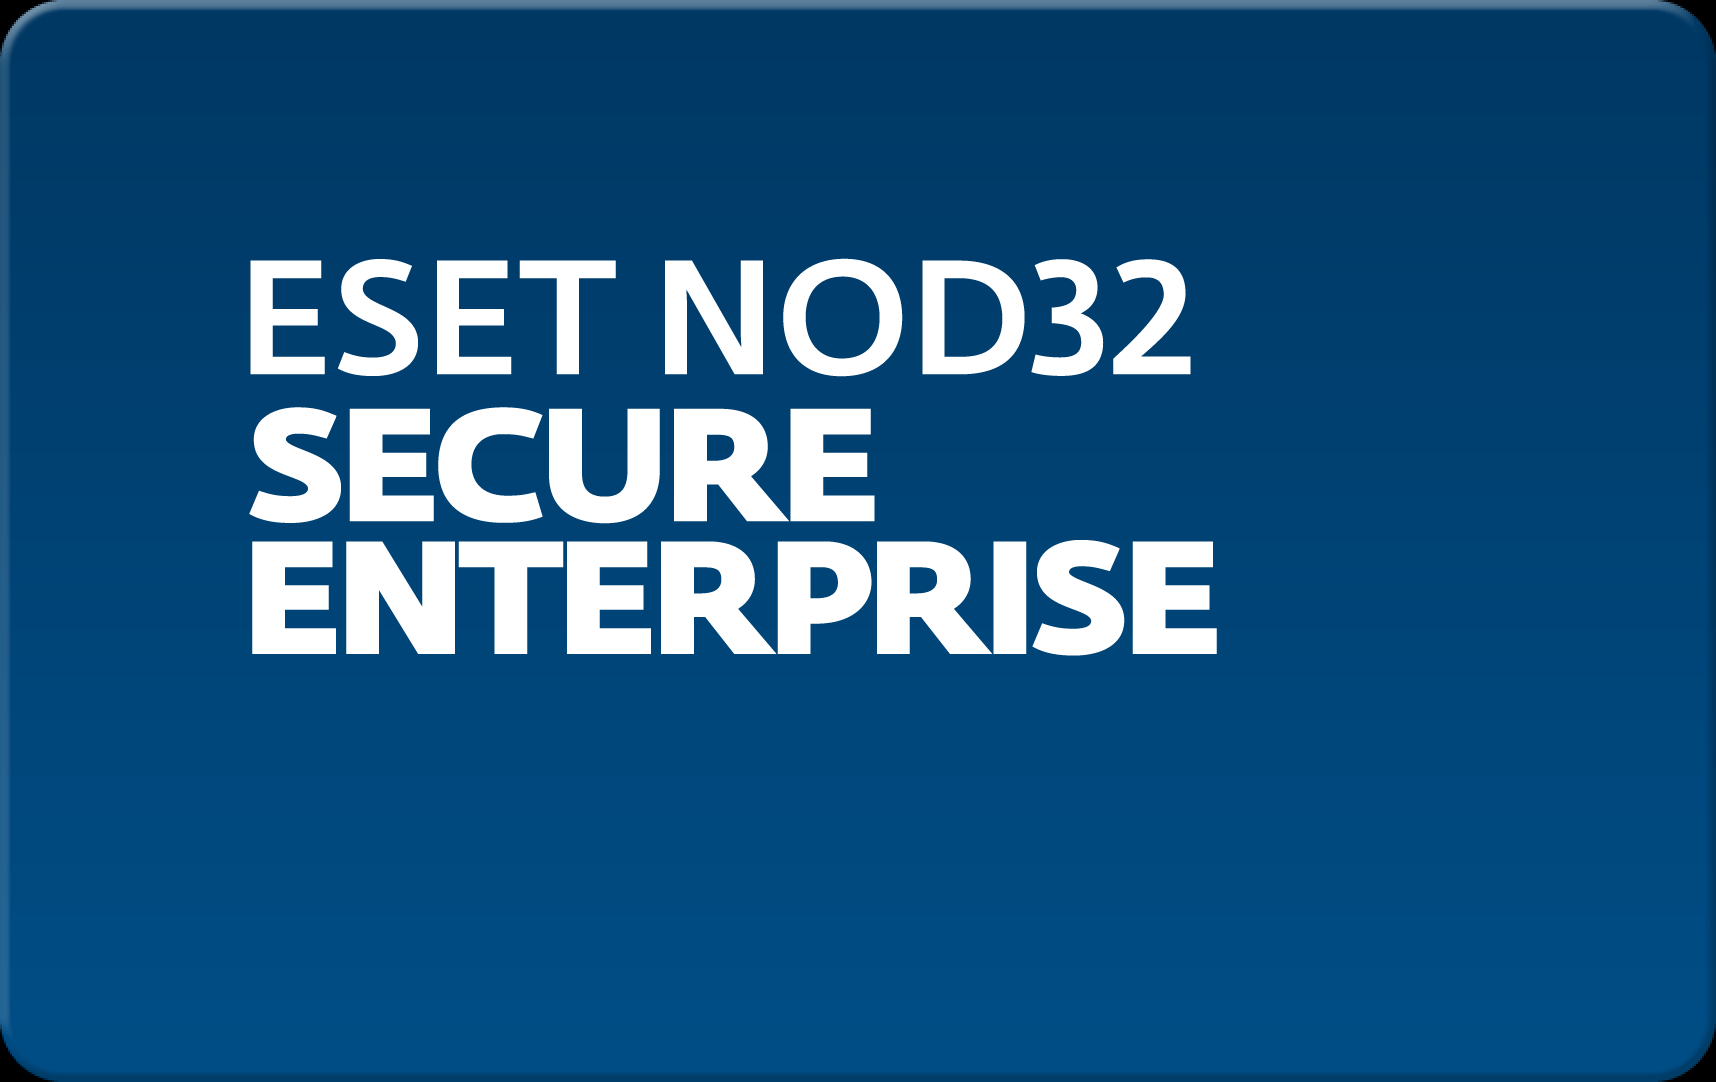        Eset NOD32 Secure Enterprise  126 